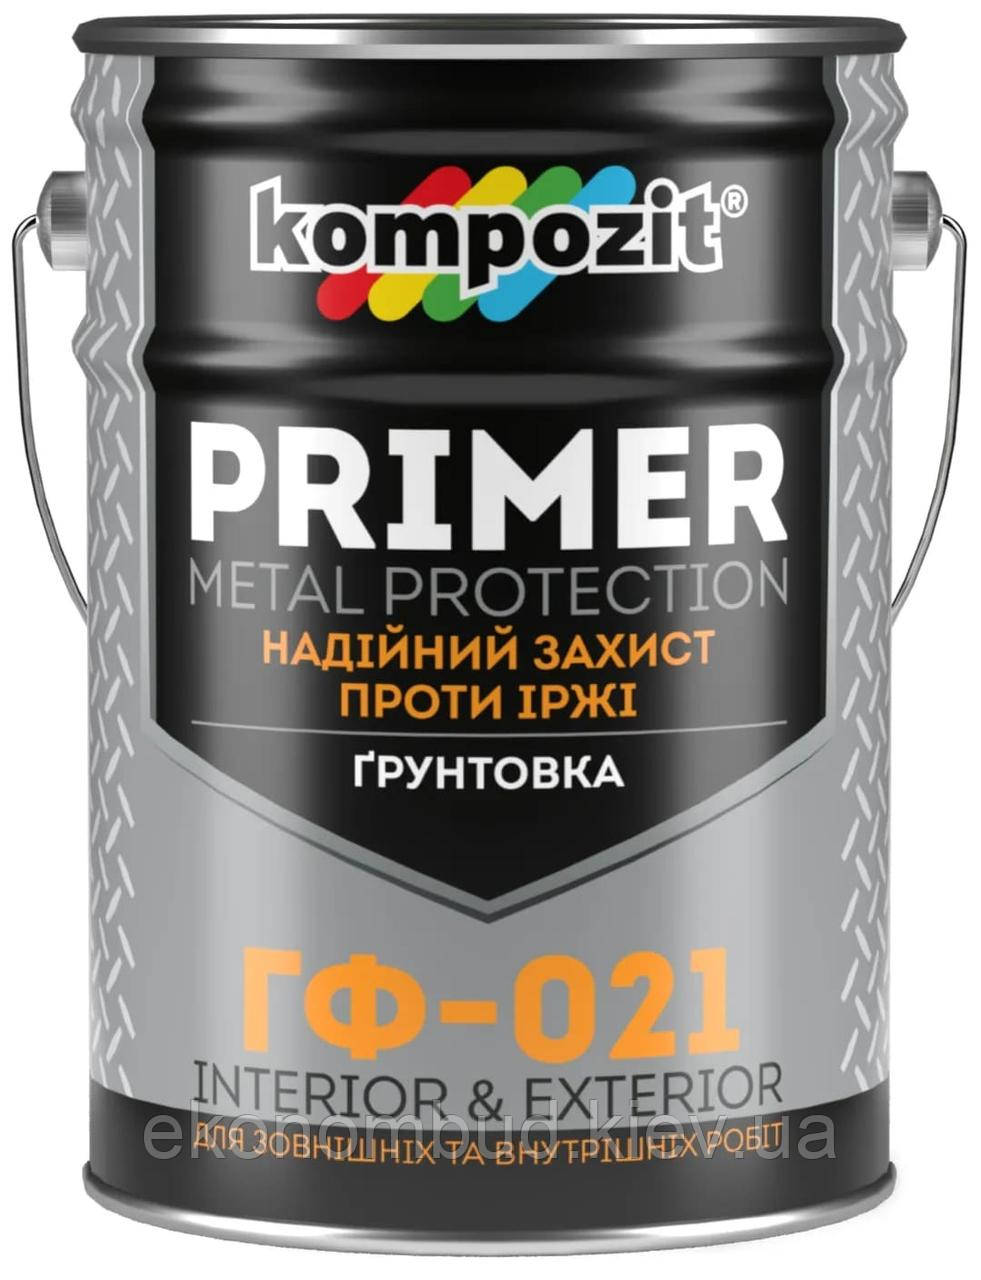 Ґрунтовка ГФ-021 Kompozit® (Колір: Білий, Фасування: 25 кг)